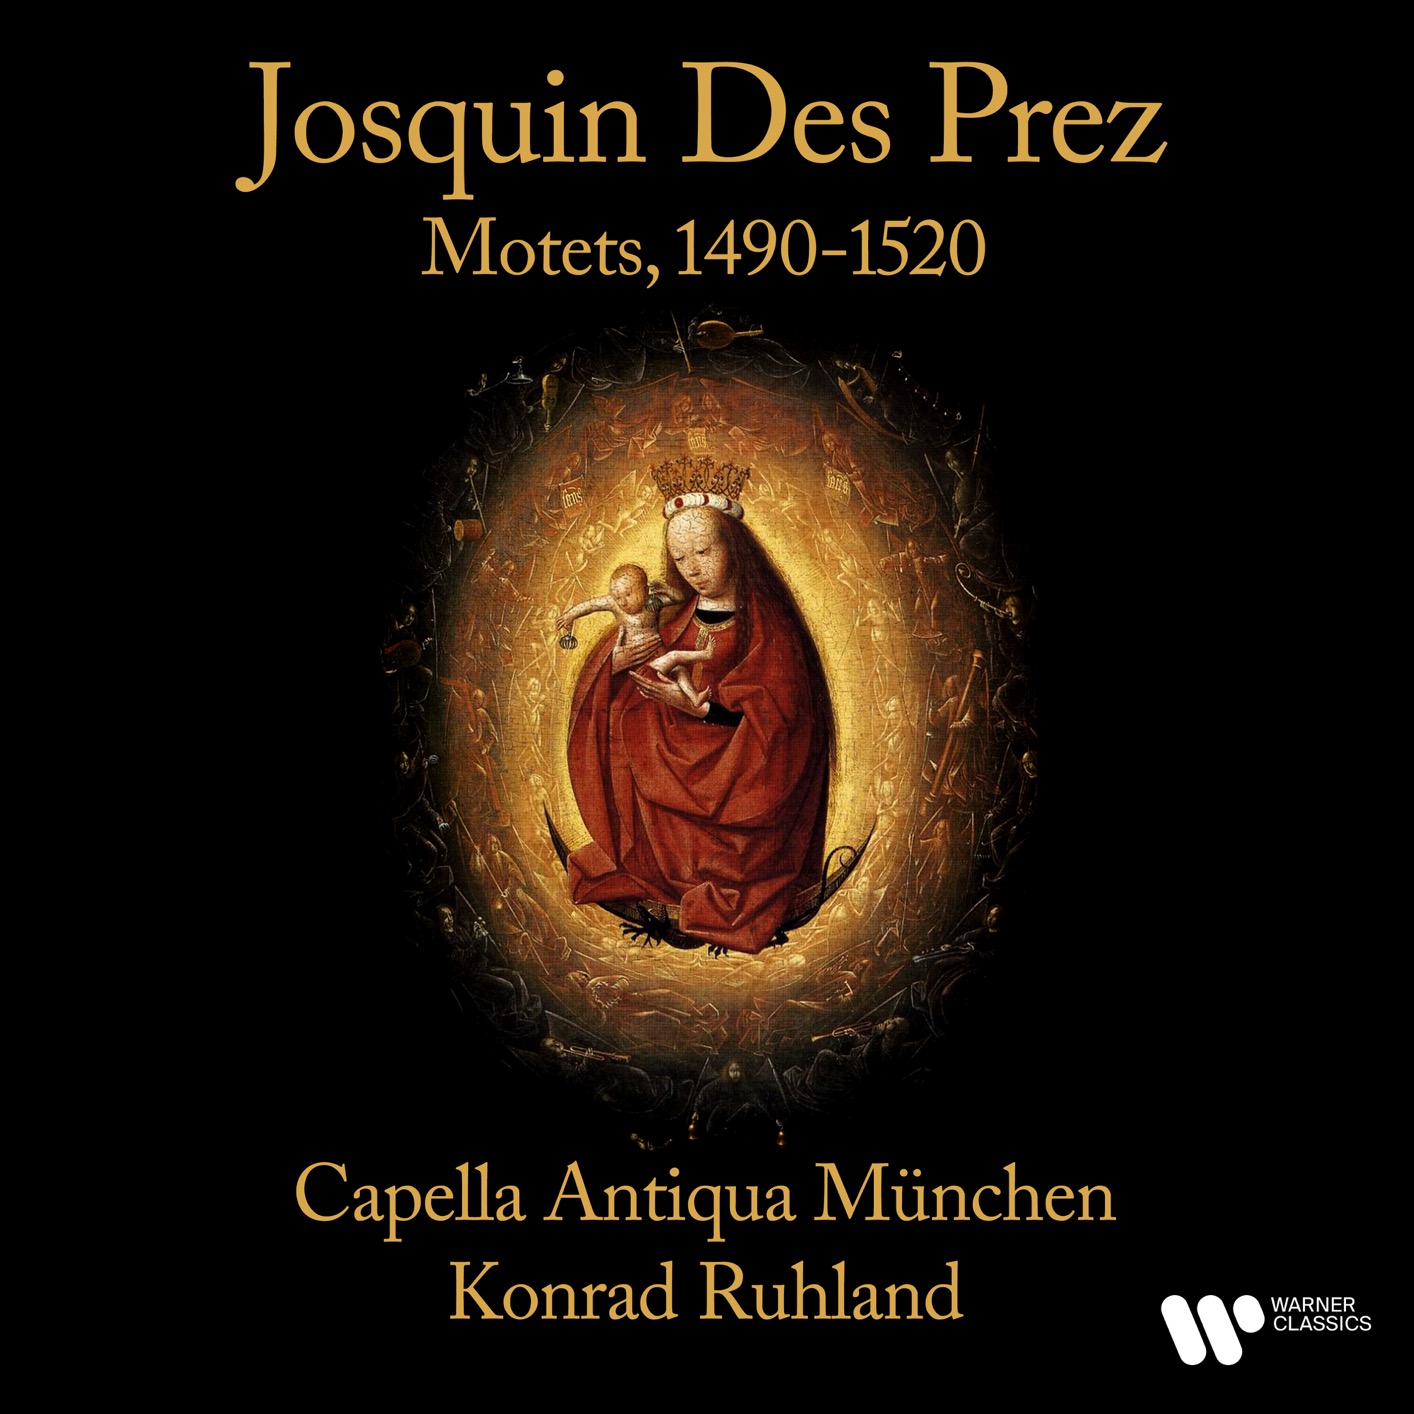 Capella Antiqua Muunchen & Konrad Ruhland – Dez Prez: Motets, 1490-1520 (Remastered) (1966/2021) [FLAC 24bit/192kHz]